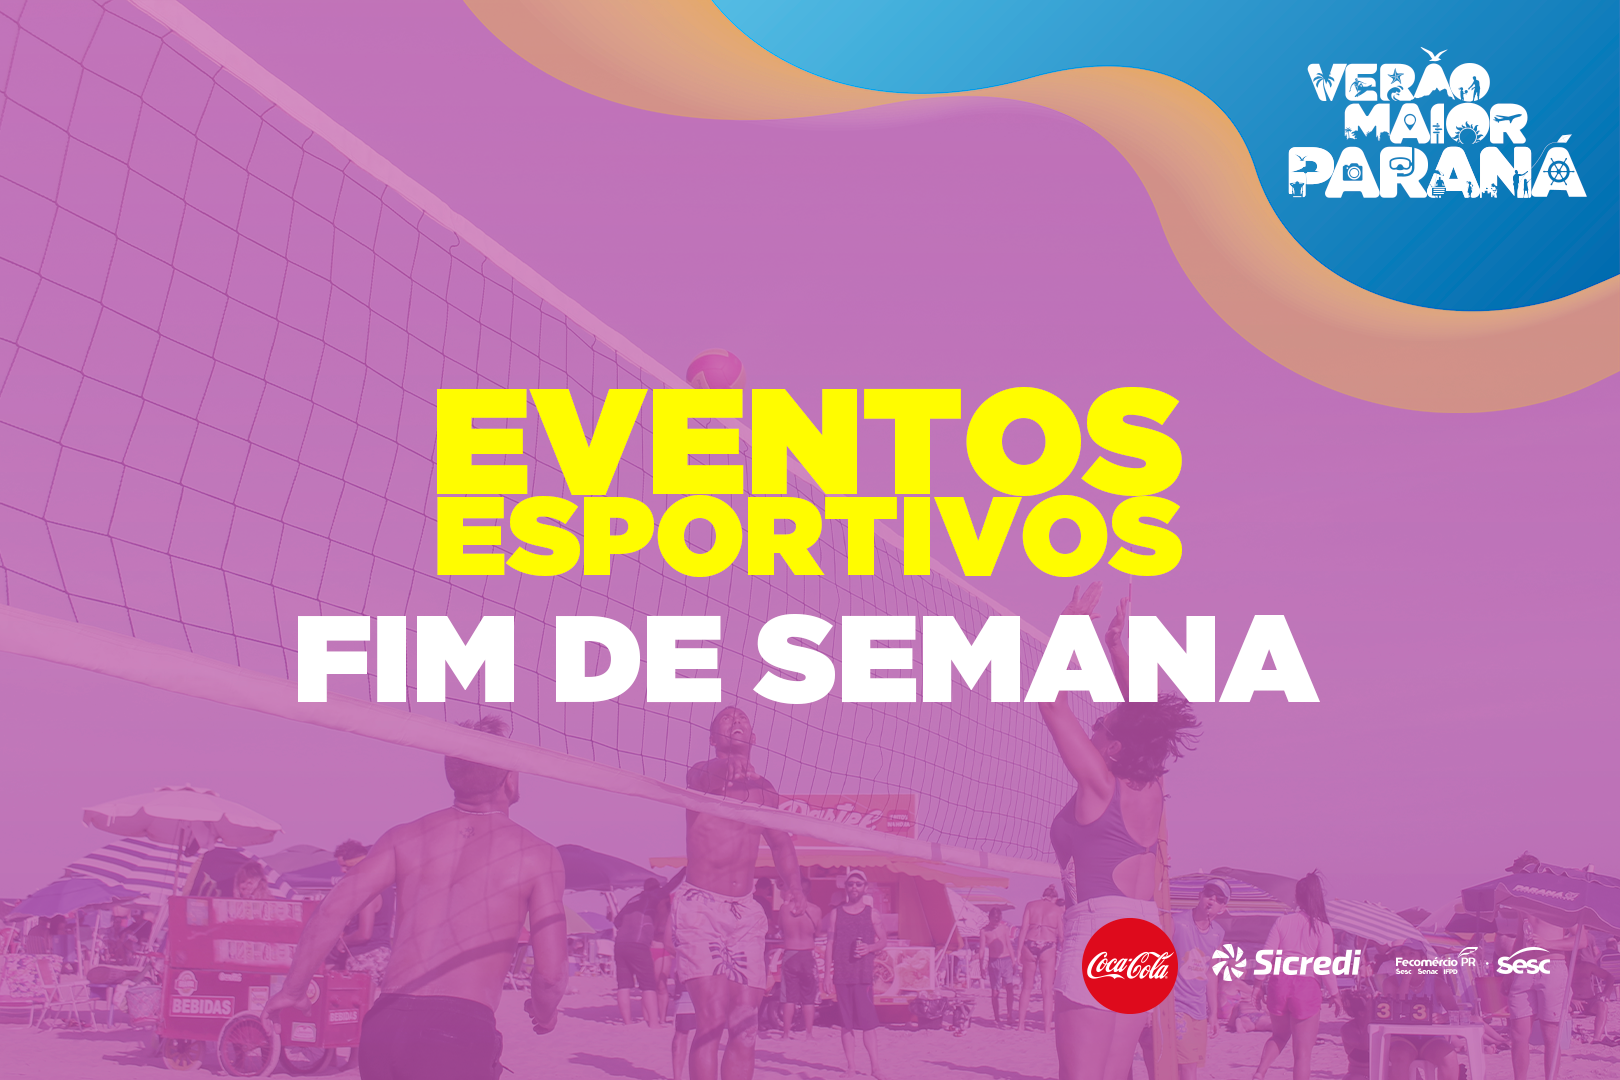 Eventos esportivos Verão Maior Paraná